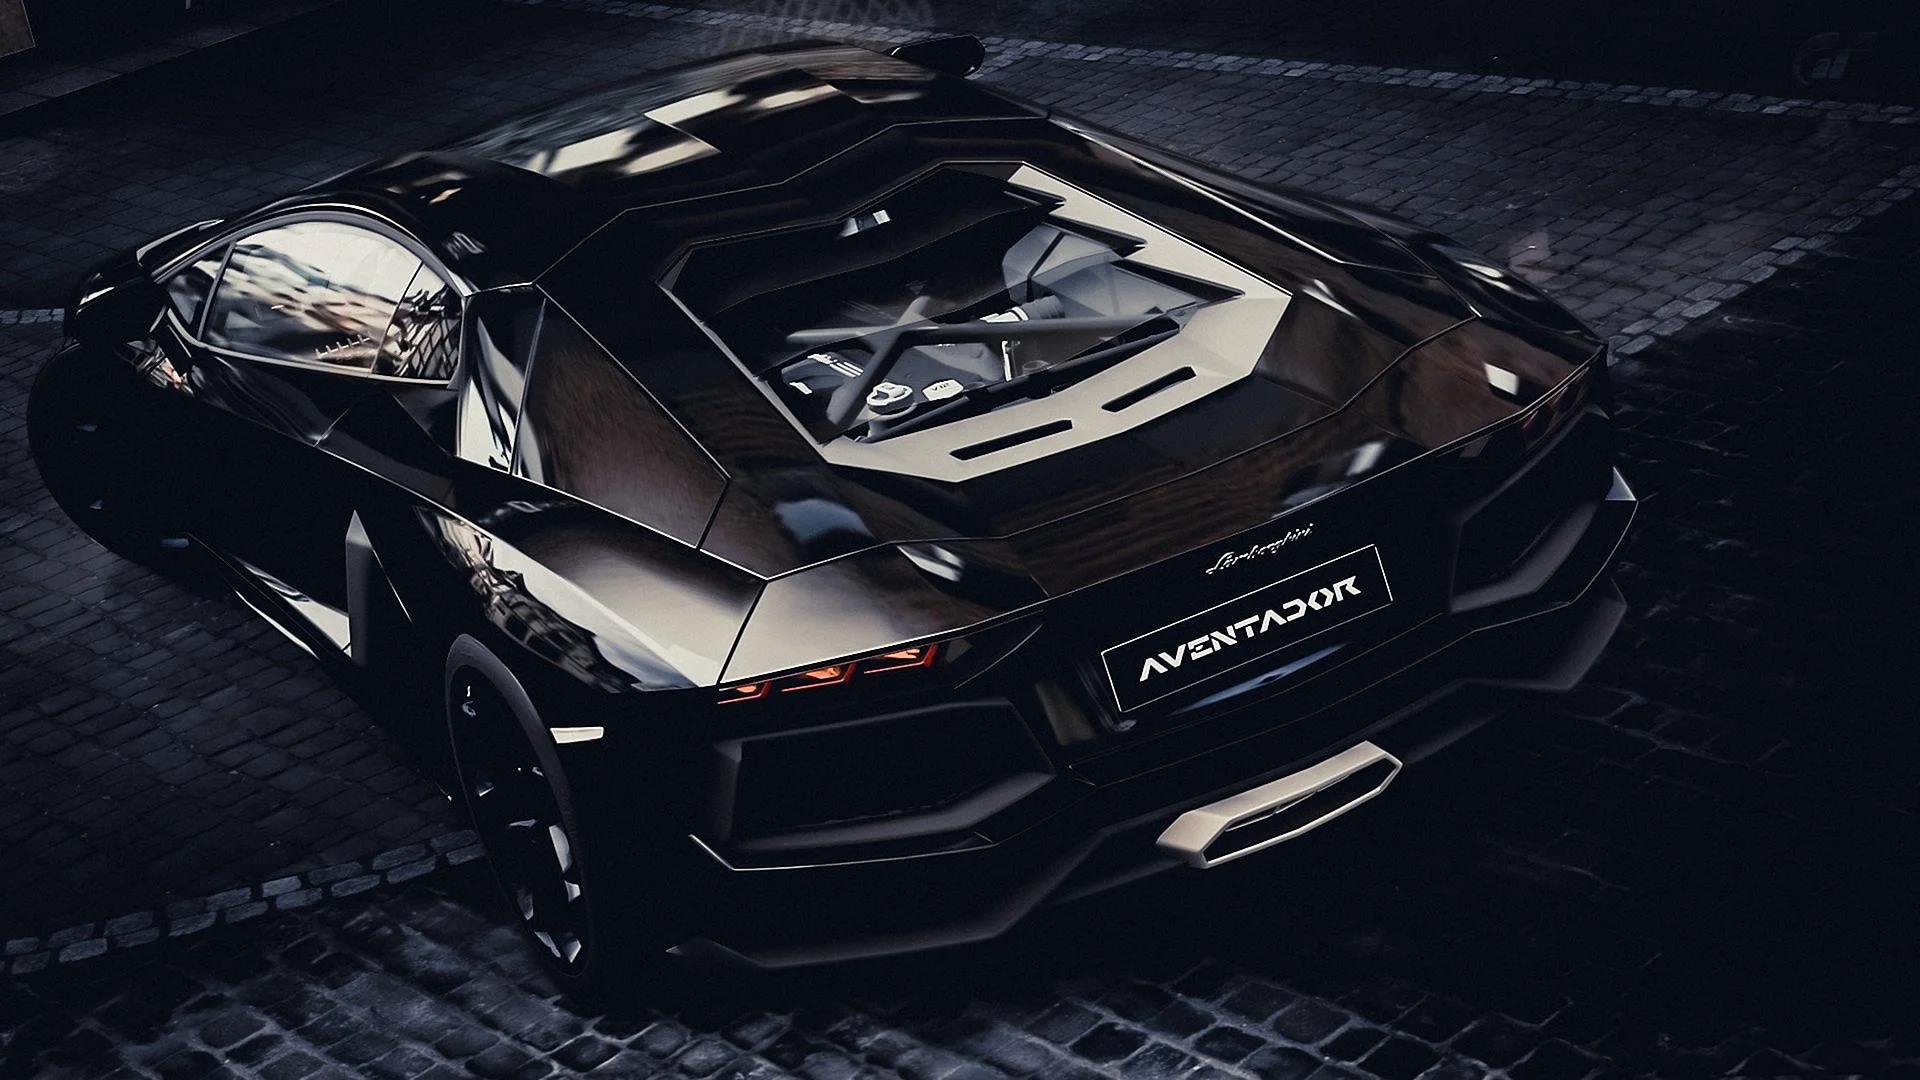 Black Lamborghini 4k Wallpaper